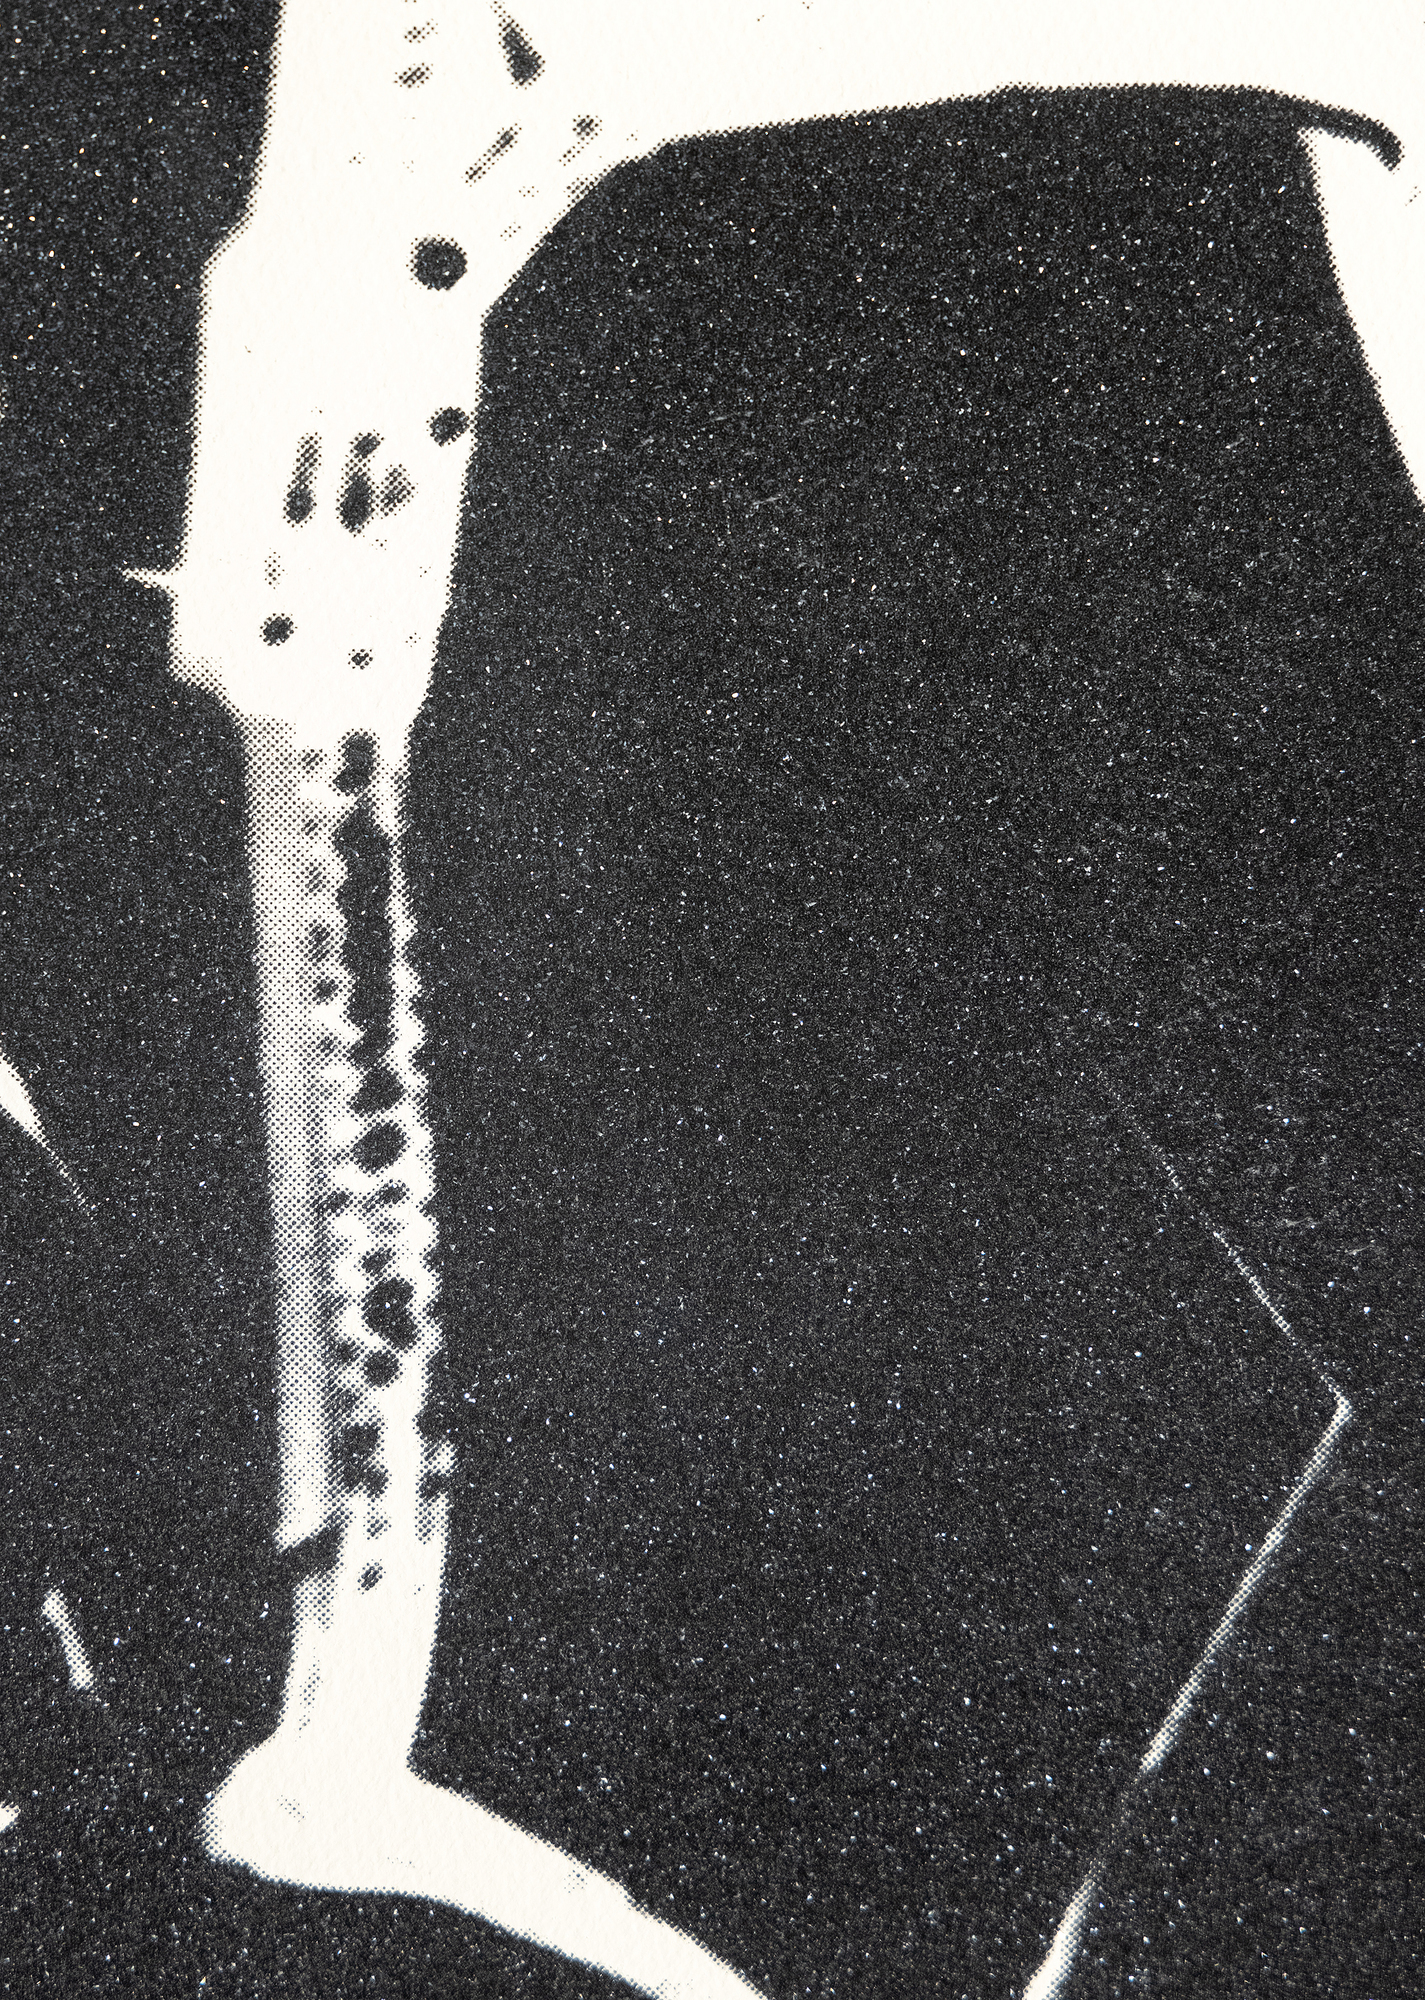 Andy Warhol ist ein Synonym für die amerikanische Kunst in der zweiten Hälfte des 20. Jahrhunderts und bekannt für seine ikonischen Porträts und Konsumgüter, in denen er Populärkultur und bildende Kunst vermischte und damit neu definierte, was Kunst sein könnte und wie wir Kunst betrachten. Viele von Warhols Werken stellen zwar keine berühmten Persönlichkeiten dar, aber seine Darstellungen von unbelebten Gegenständen erheben seine Subjekte auf eine Ebene der Berühmtheit. Warhol stellte erstmals zu Beginn seiner Karriere Schuhe dar, als er als Modeillustrator arbeitete, und kehrte in den 1980er Jahren zu diesem Thema zurück, um seine Faszination für Konsum und Glamour zu verbinden. In seinem ständigen Bestreben, Hoch- und Niedrigkultur zu vereinen, wählte Warhol ein Thema, das so allgegenwärtig ist wie Schuhe. Das Motiv kann für Armut oder Reichtum, Funktion oder Mode stehen. Warhol glamourisiert den Haufen Schuhe, indem er sie mit einer Patina aus glitzerndem Diamantenstaub überzieht und so die Bedeutung zwischen utilitaristischer Notwendigkeit und stilisiertem Statement-Piece weiter verwischt.